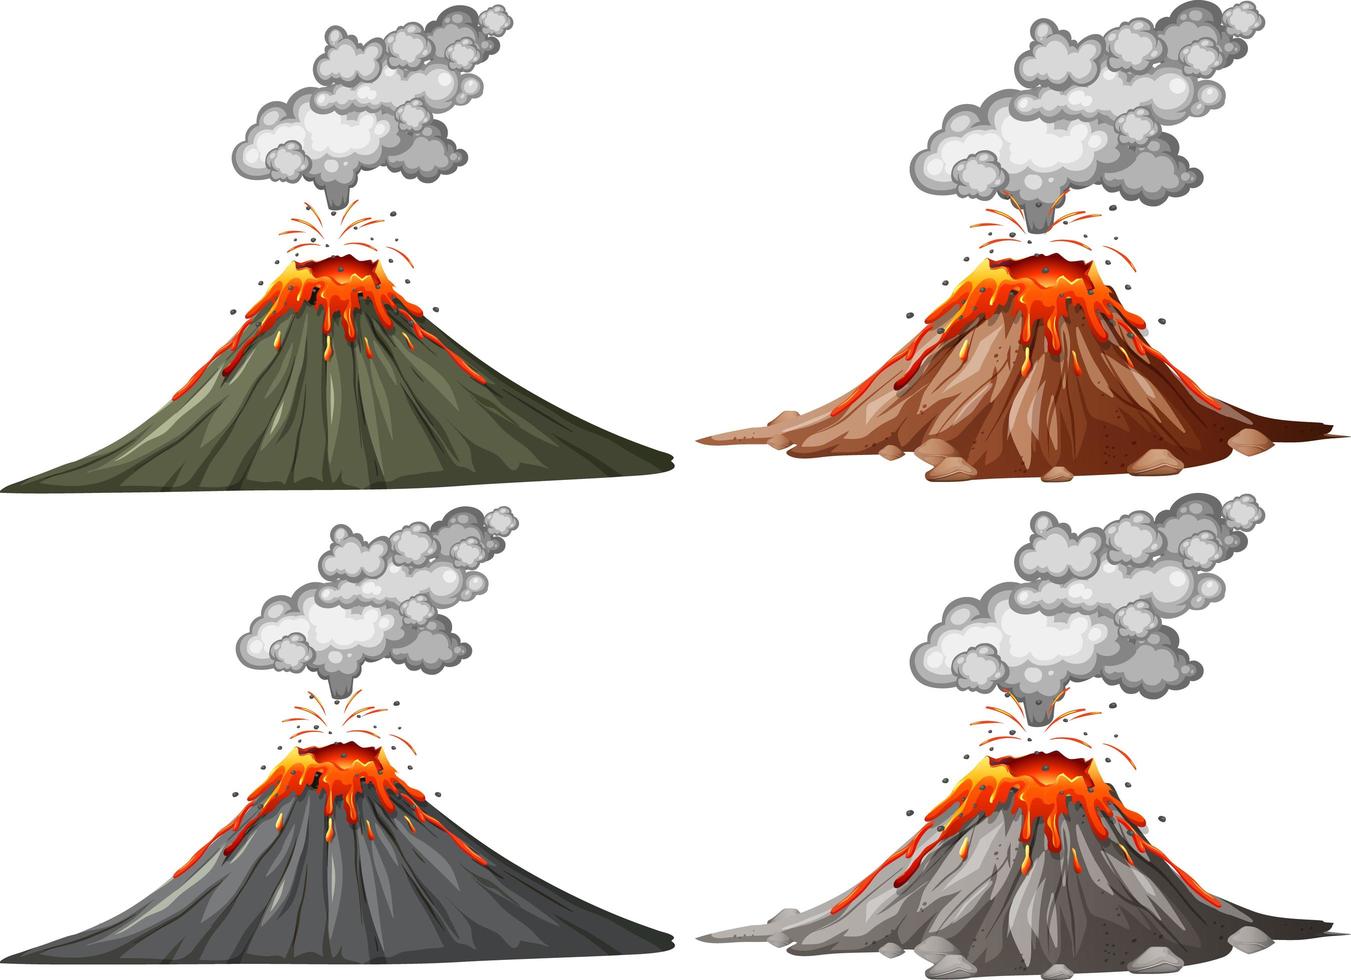 cuatro tipos de erupción volcánica vector